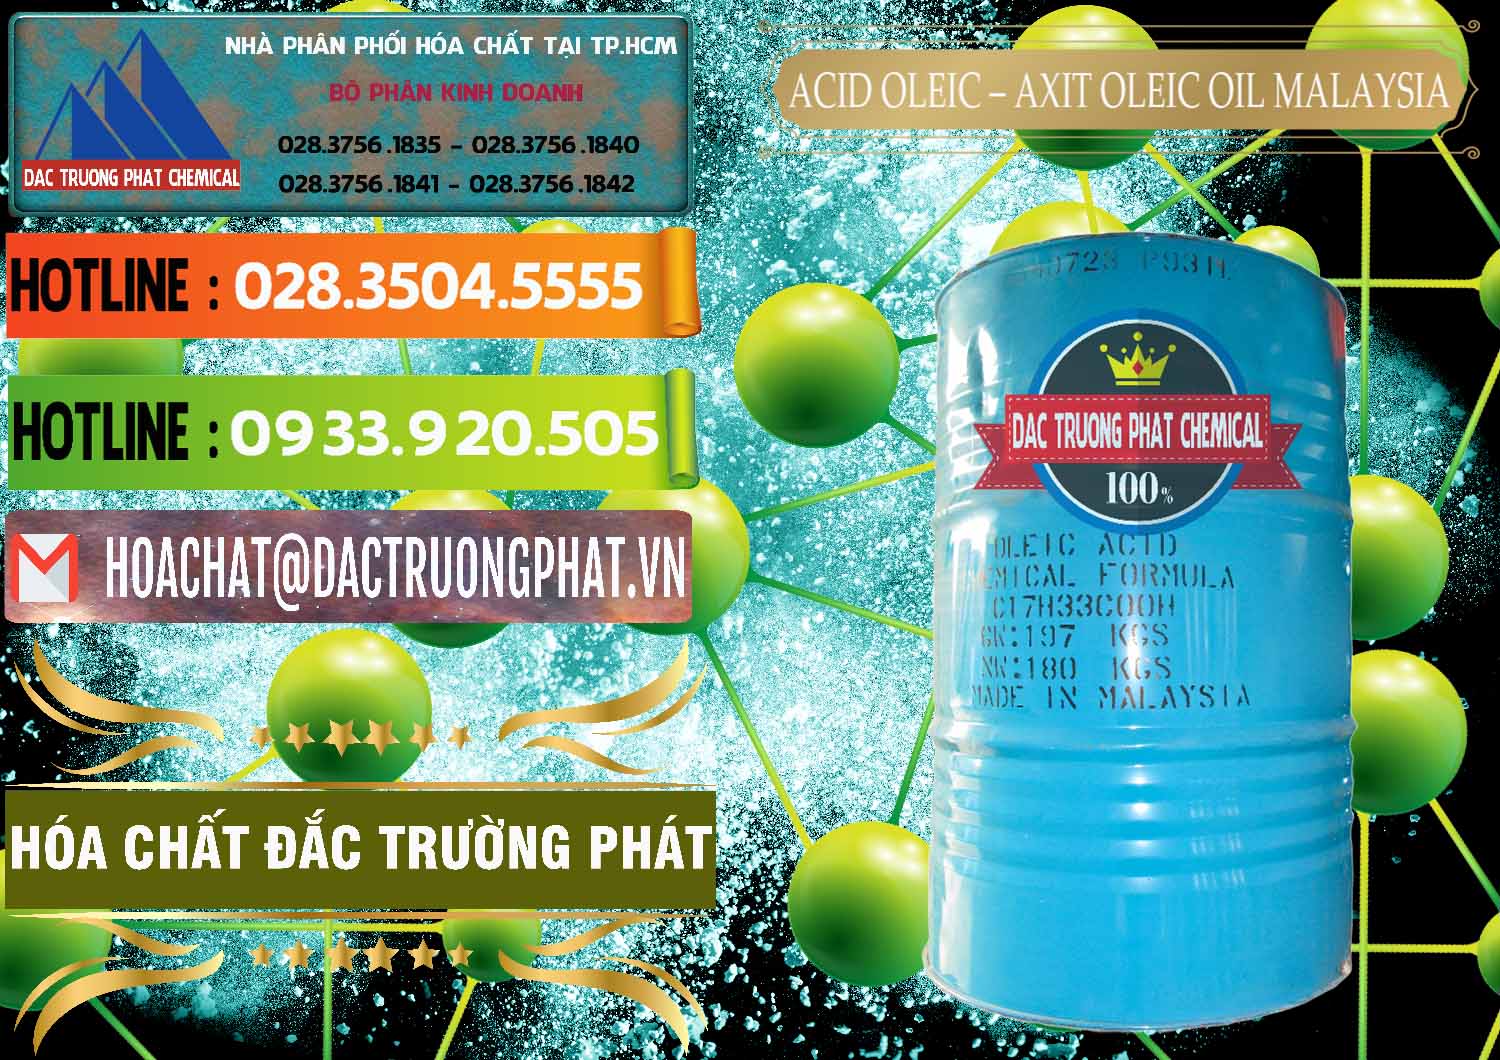 Đơn vị bán & phân phối Acid Oleic – Axit Oleic Oil Malaysia - 0013 - Cty nhập khẩu & cung cấp hóa chất tại TP.HCM - cungcaphoachat.com.vn